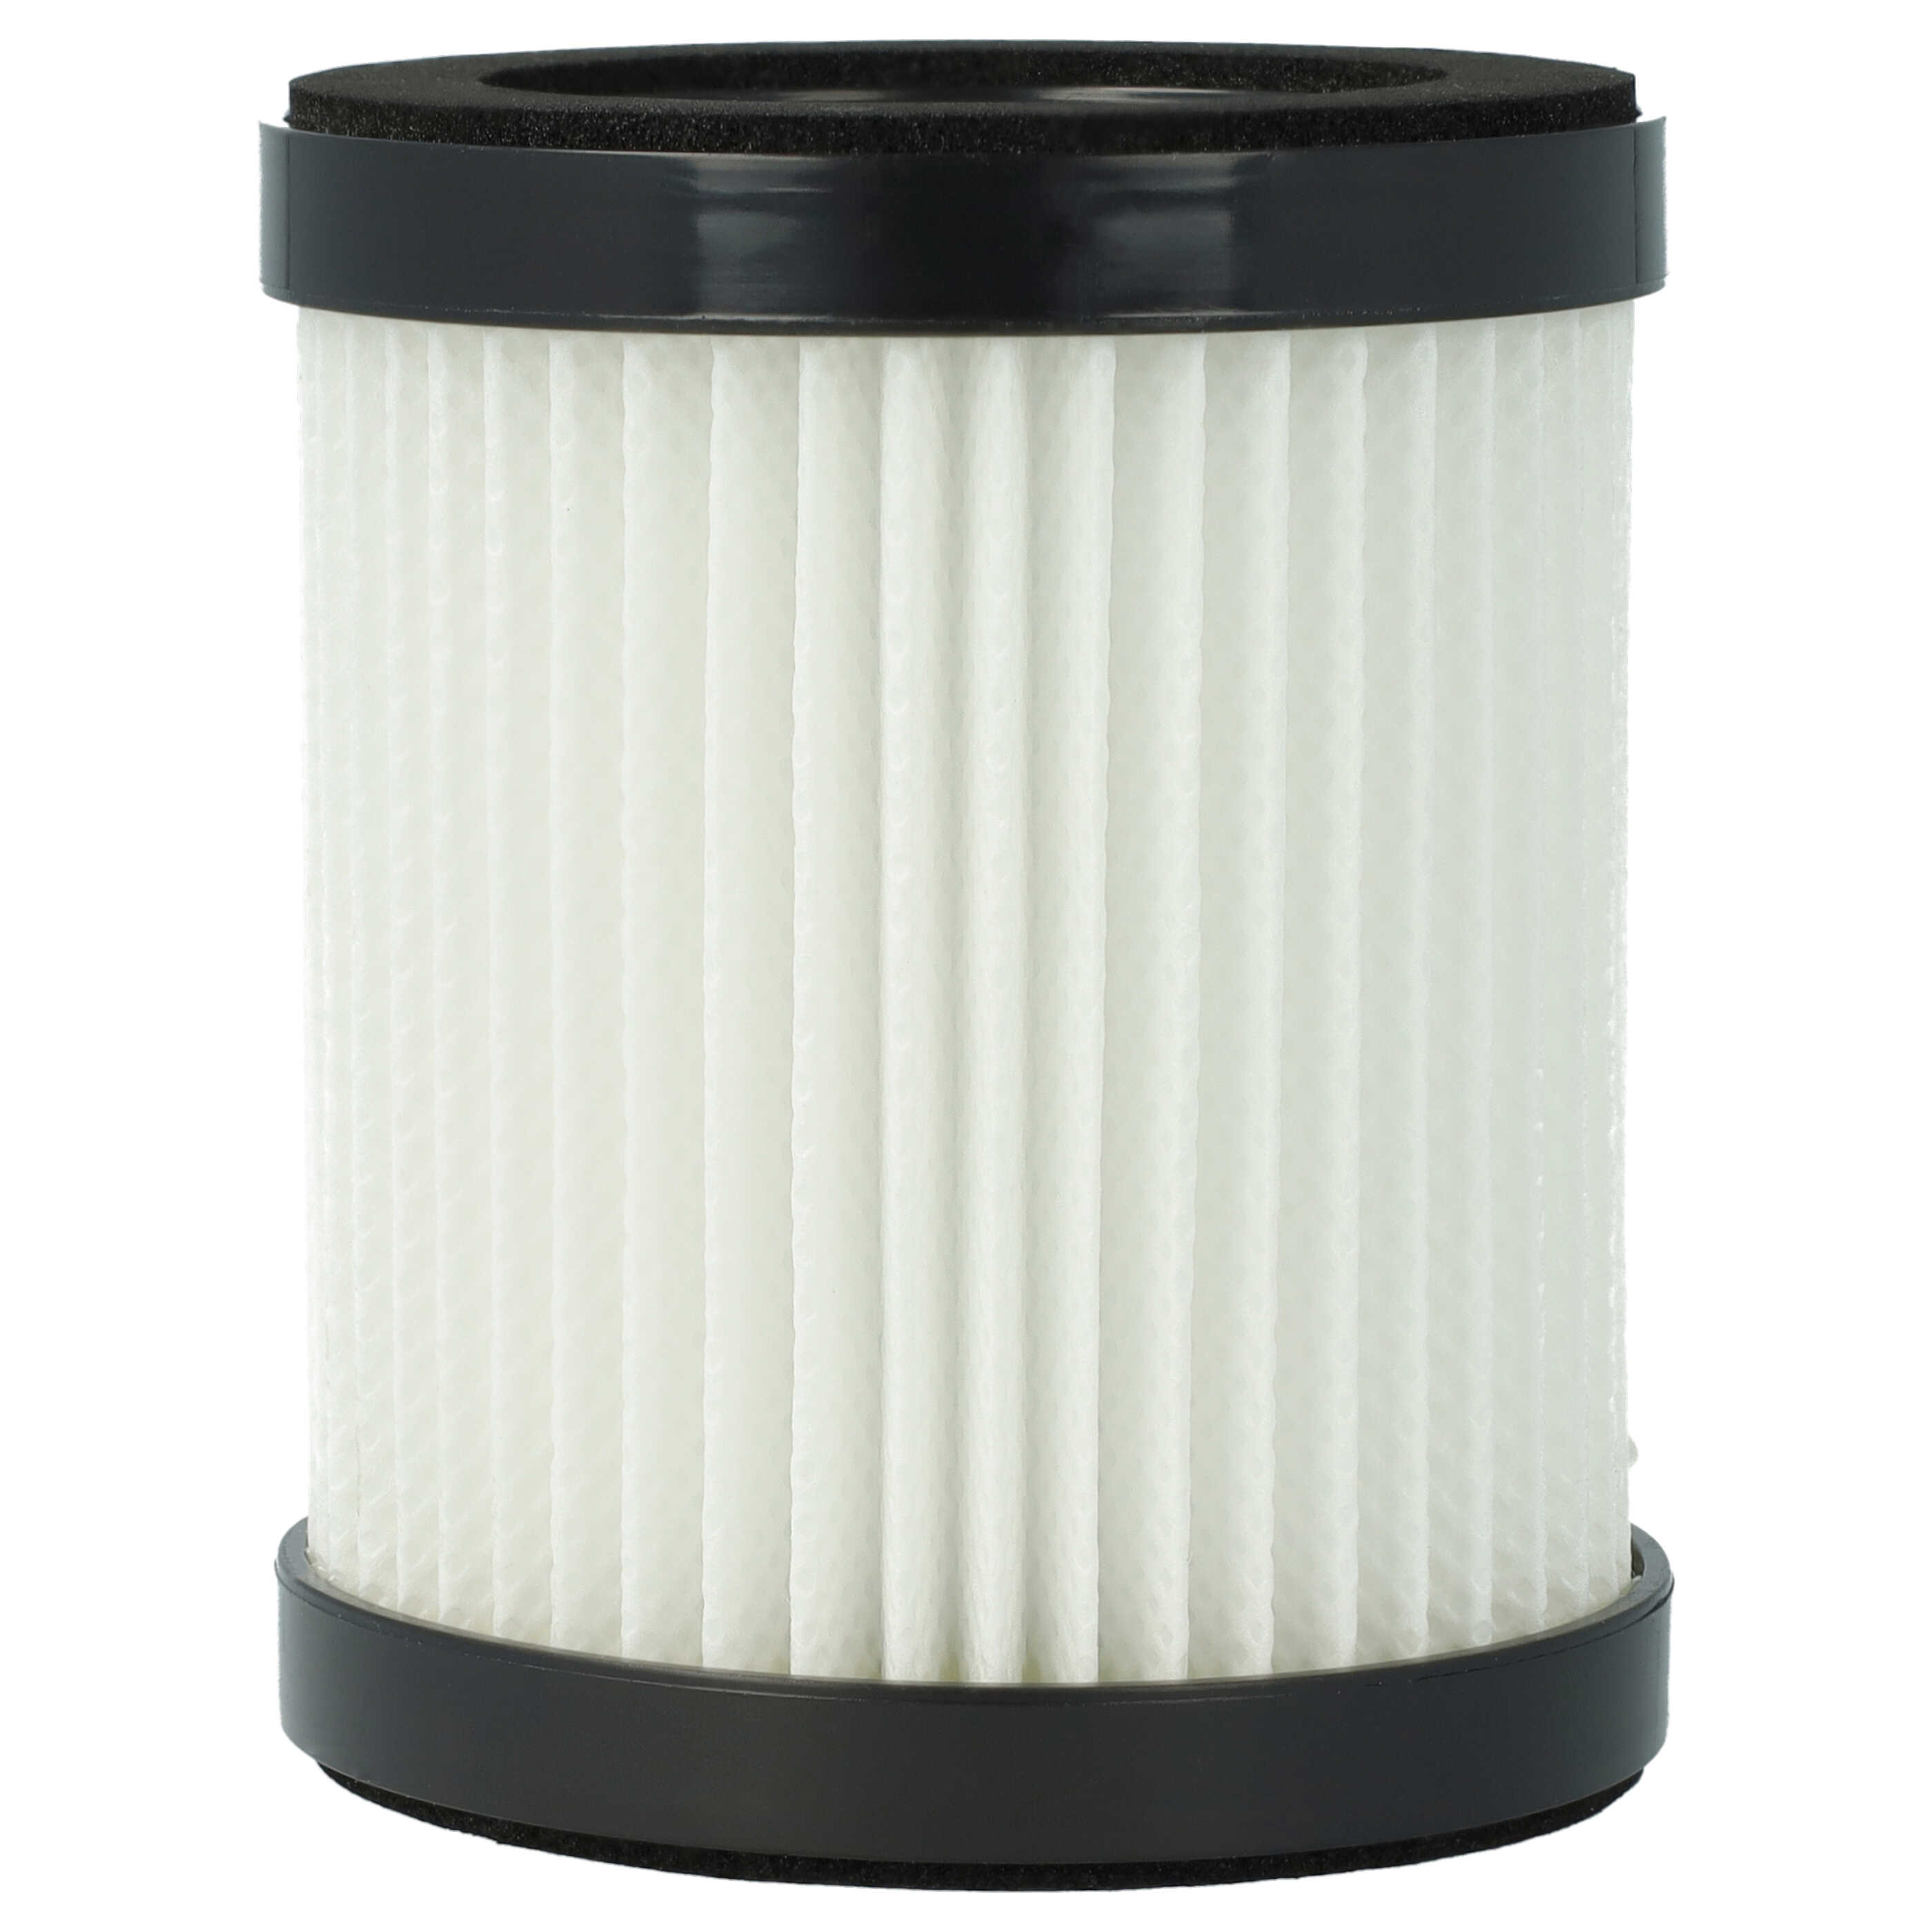 2x Filter passend für Moosoo, Beldray XL-618A Staubsauger